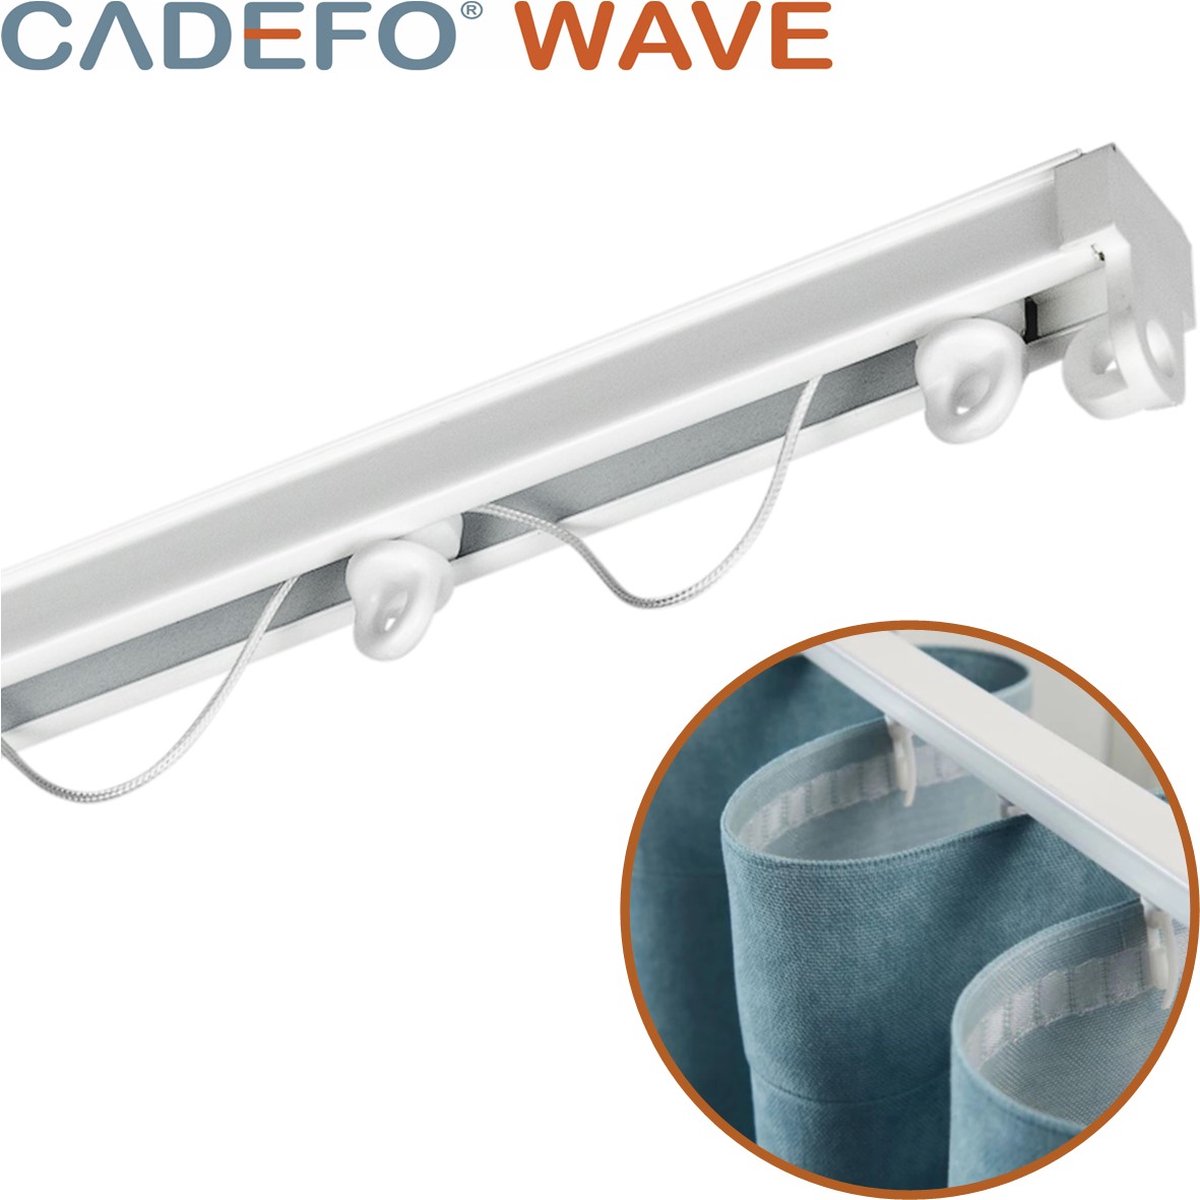 CADEFO WAVE (301 - 350 cm) Gordijnrails - Compleet op maat! - UIT 1 STUK - Leverbaar tot 6 meter - Plafondbevestiging - Lengte 333 cm